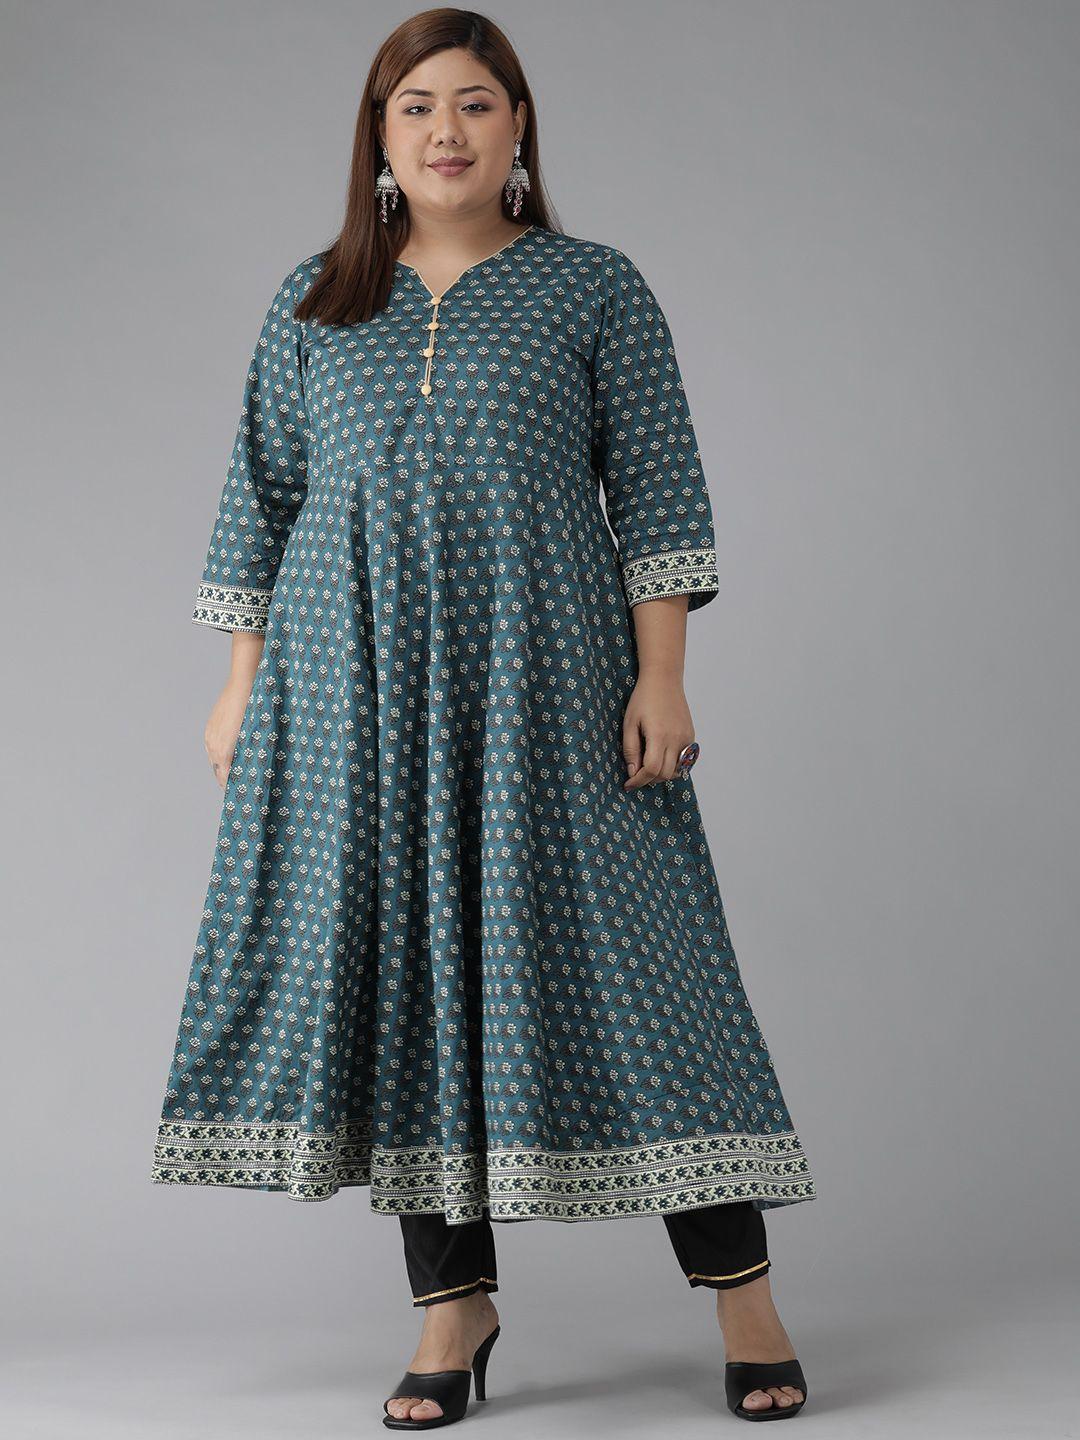 yash gallery plus size women teal blue & white ethnic motifs printed kurta